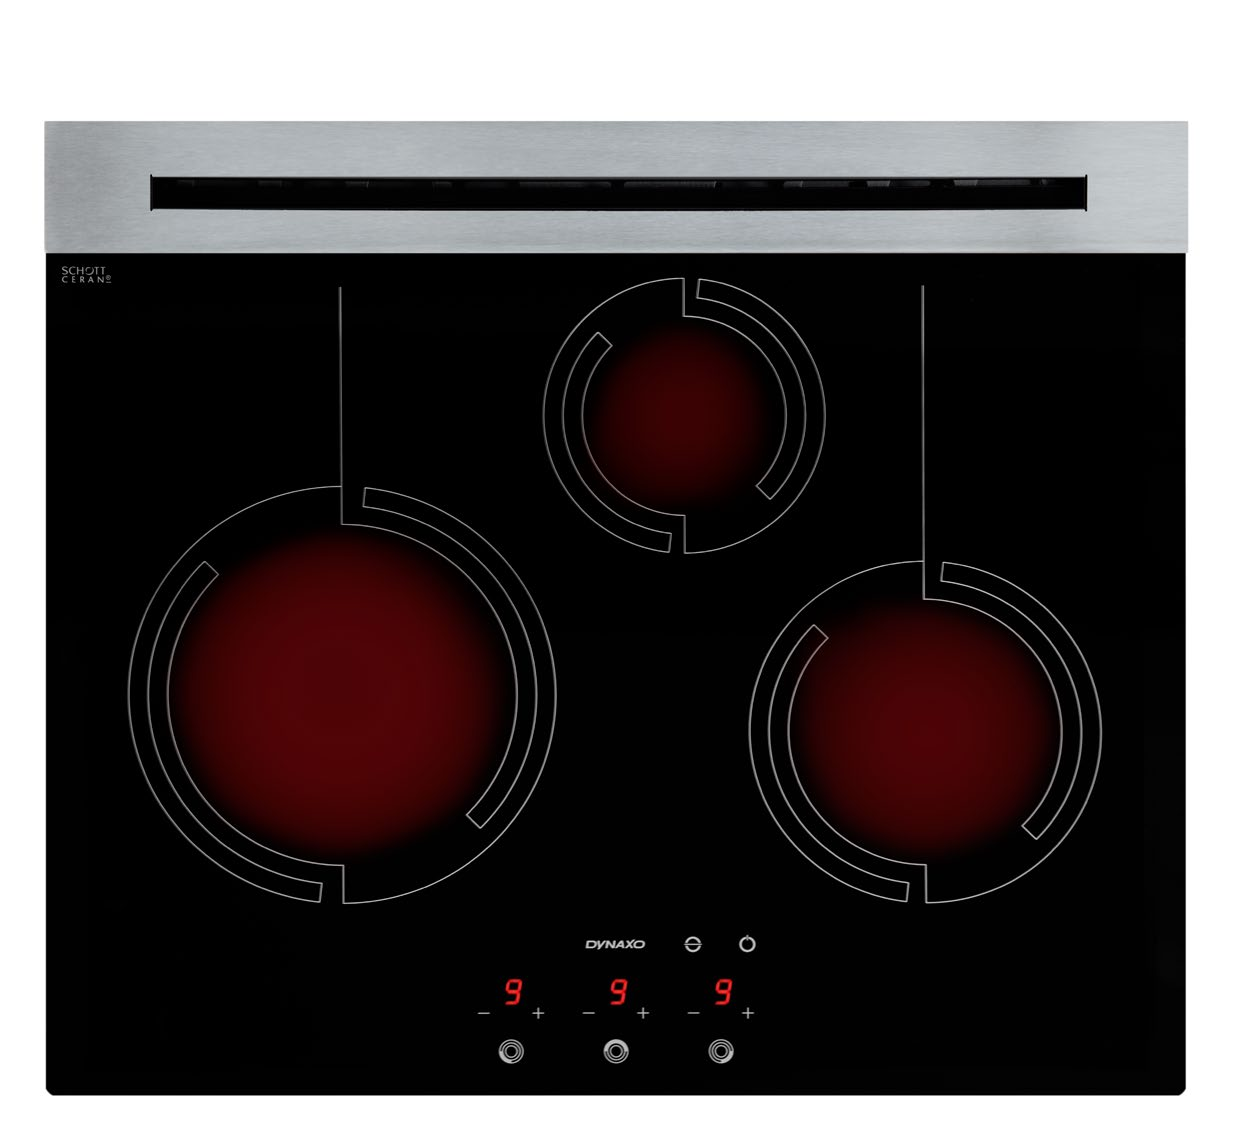 DynaCook X3 Dla amatorów gotowania. Ceramiczna powierzchnia płyty DynaCook X3 wyposażona została w trzy strefy grzejne dające możliwość jednoczesnego i komfortowego gotowania w 3 garnkach.